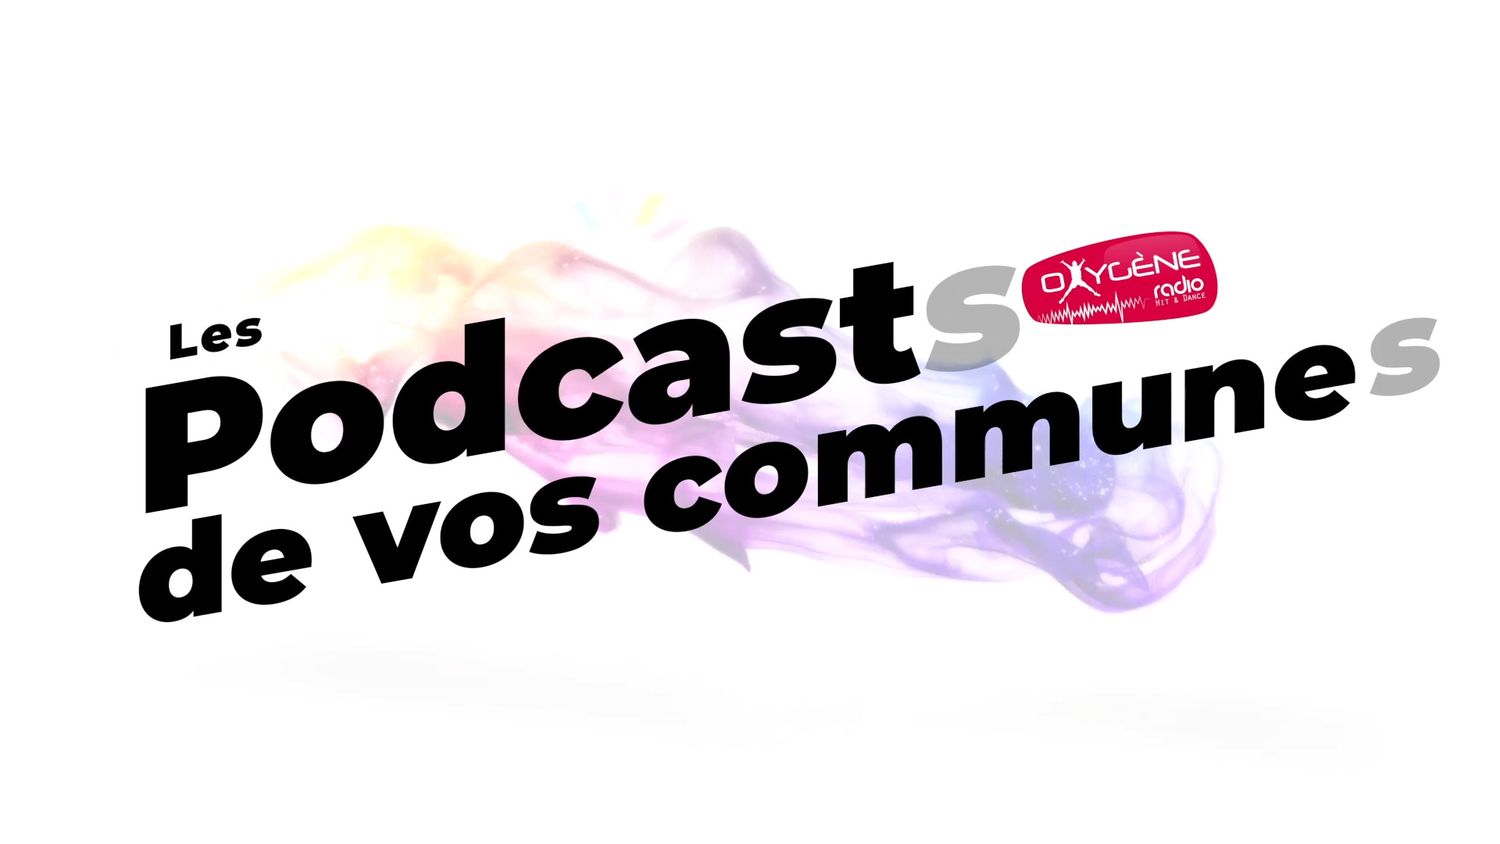 Les podcasts de nos communes